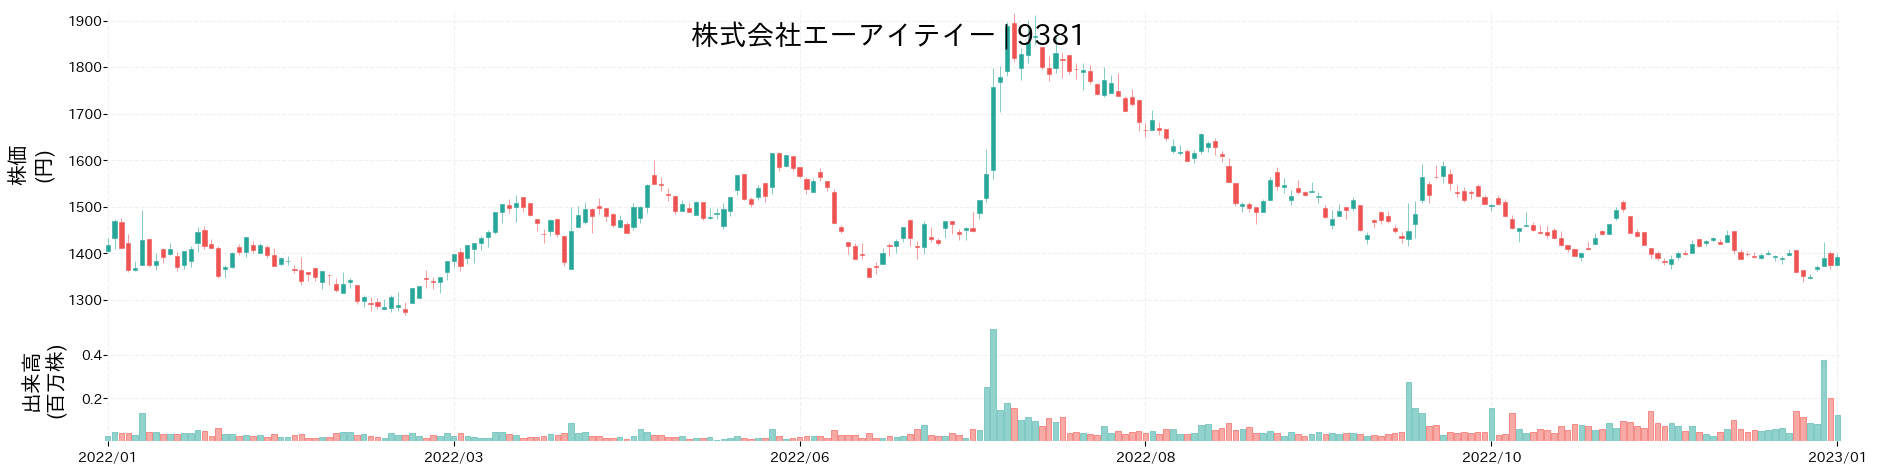 エーアイテイーの株価推移(2022)